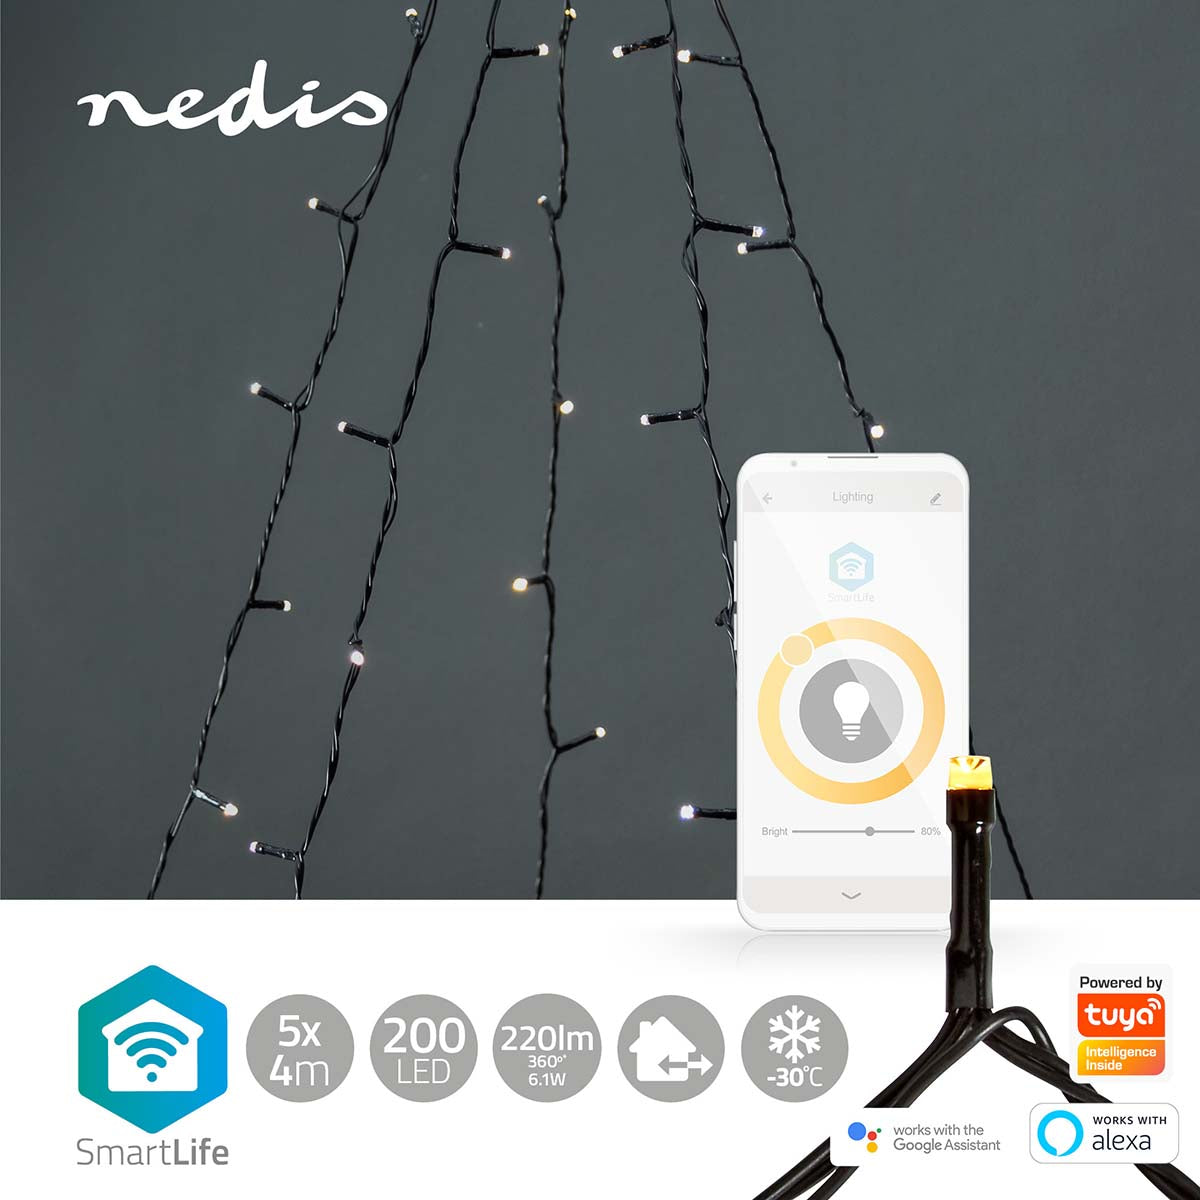 Luzes Nedis Wi-FI branco quente iluminação inteligente para um Natal acolhedor. Controle via Wi-Fi para uma experiência festiva personalizável.